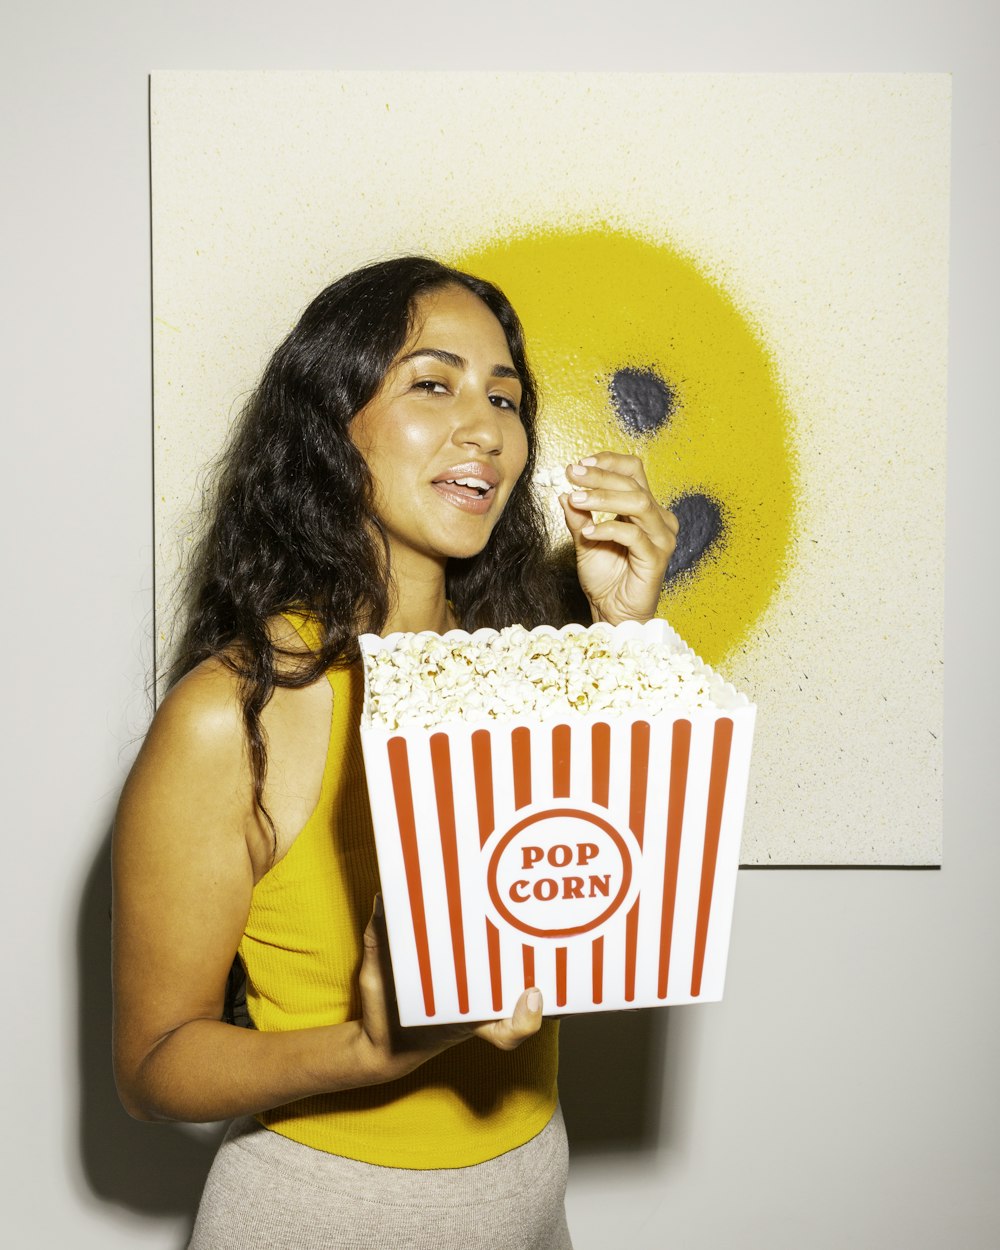 Eine Frau hält eine Schachtel Popcorn vor einem Gemälde